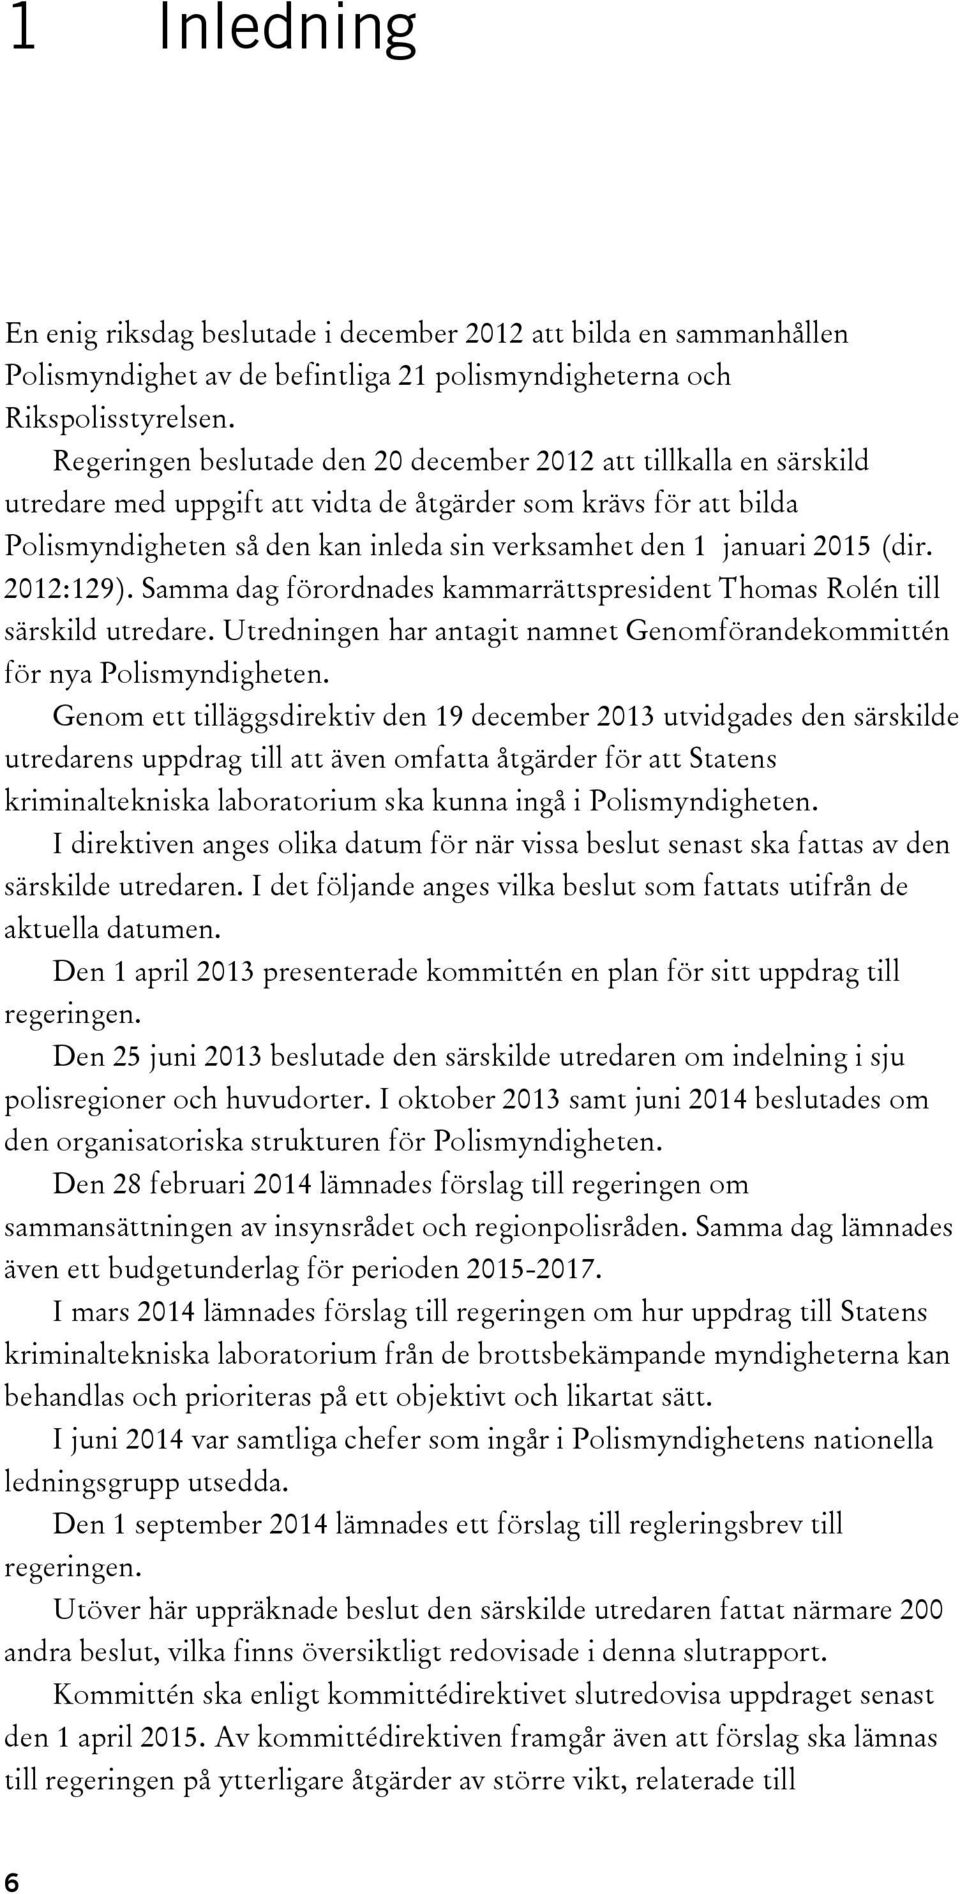 2015 (dir. 2012:129). Samma dag förordnades kammarrättspresident Thomas Rolén till särskild utredare. Utredningen har antagit namnet Genomförandekommittén för nya Polismyndigheten.